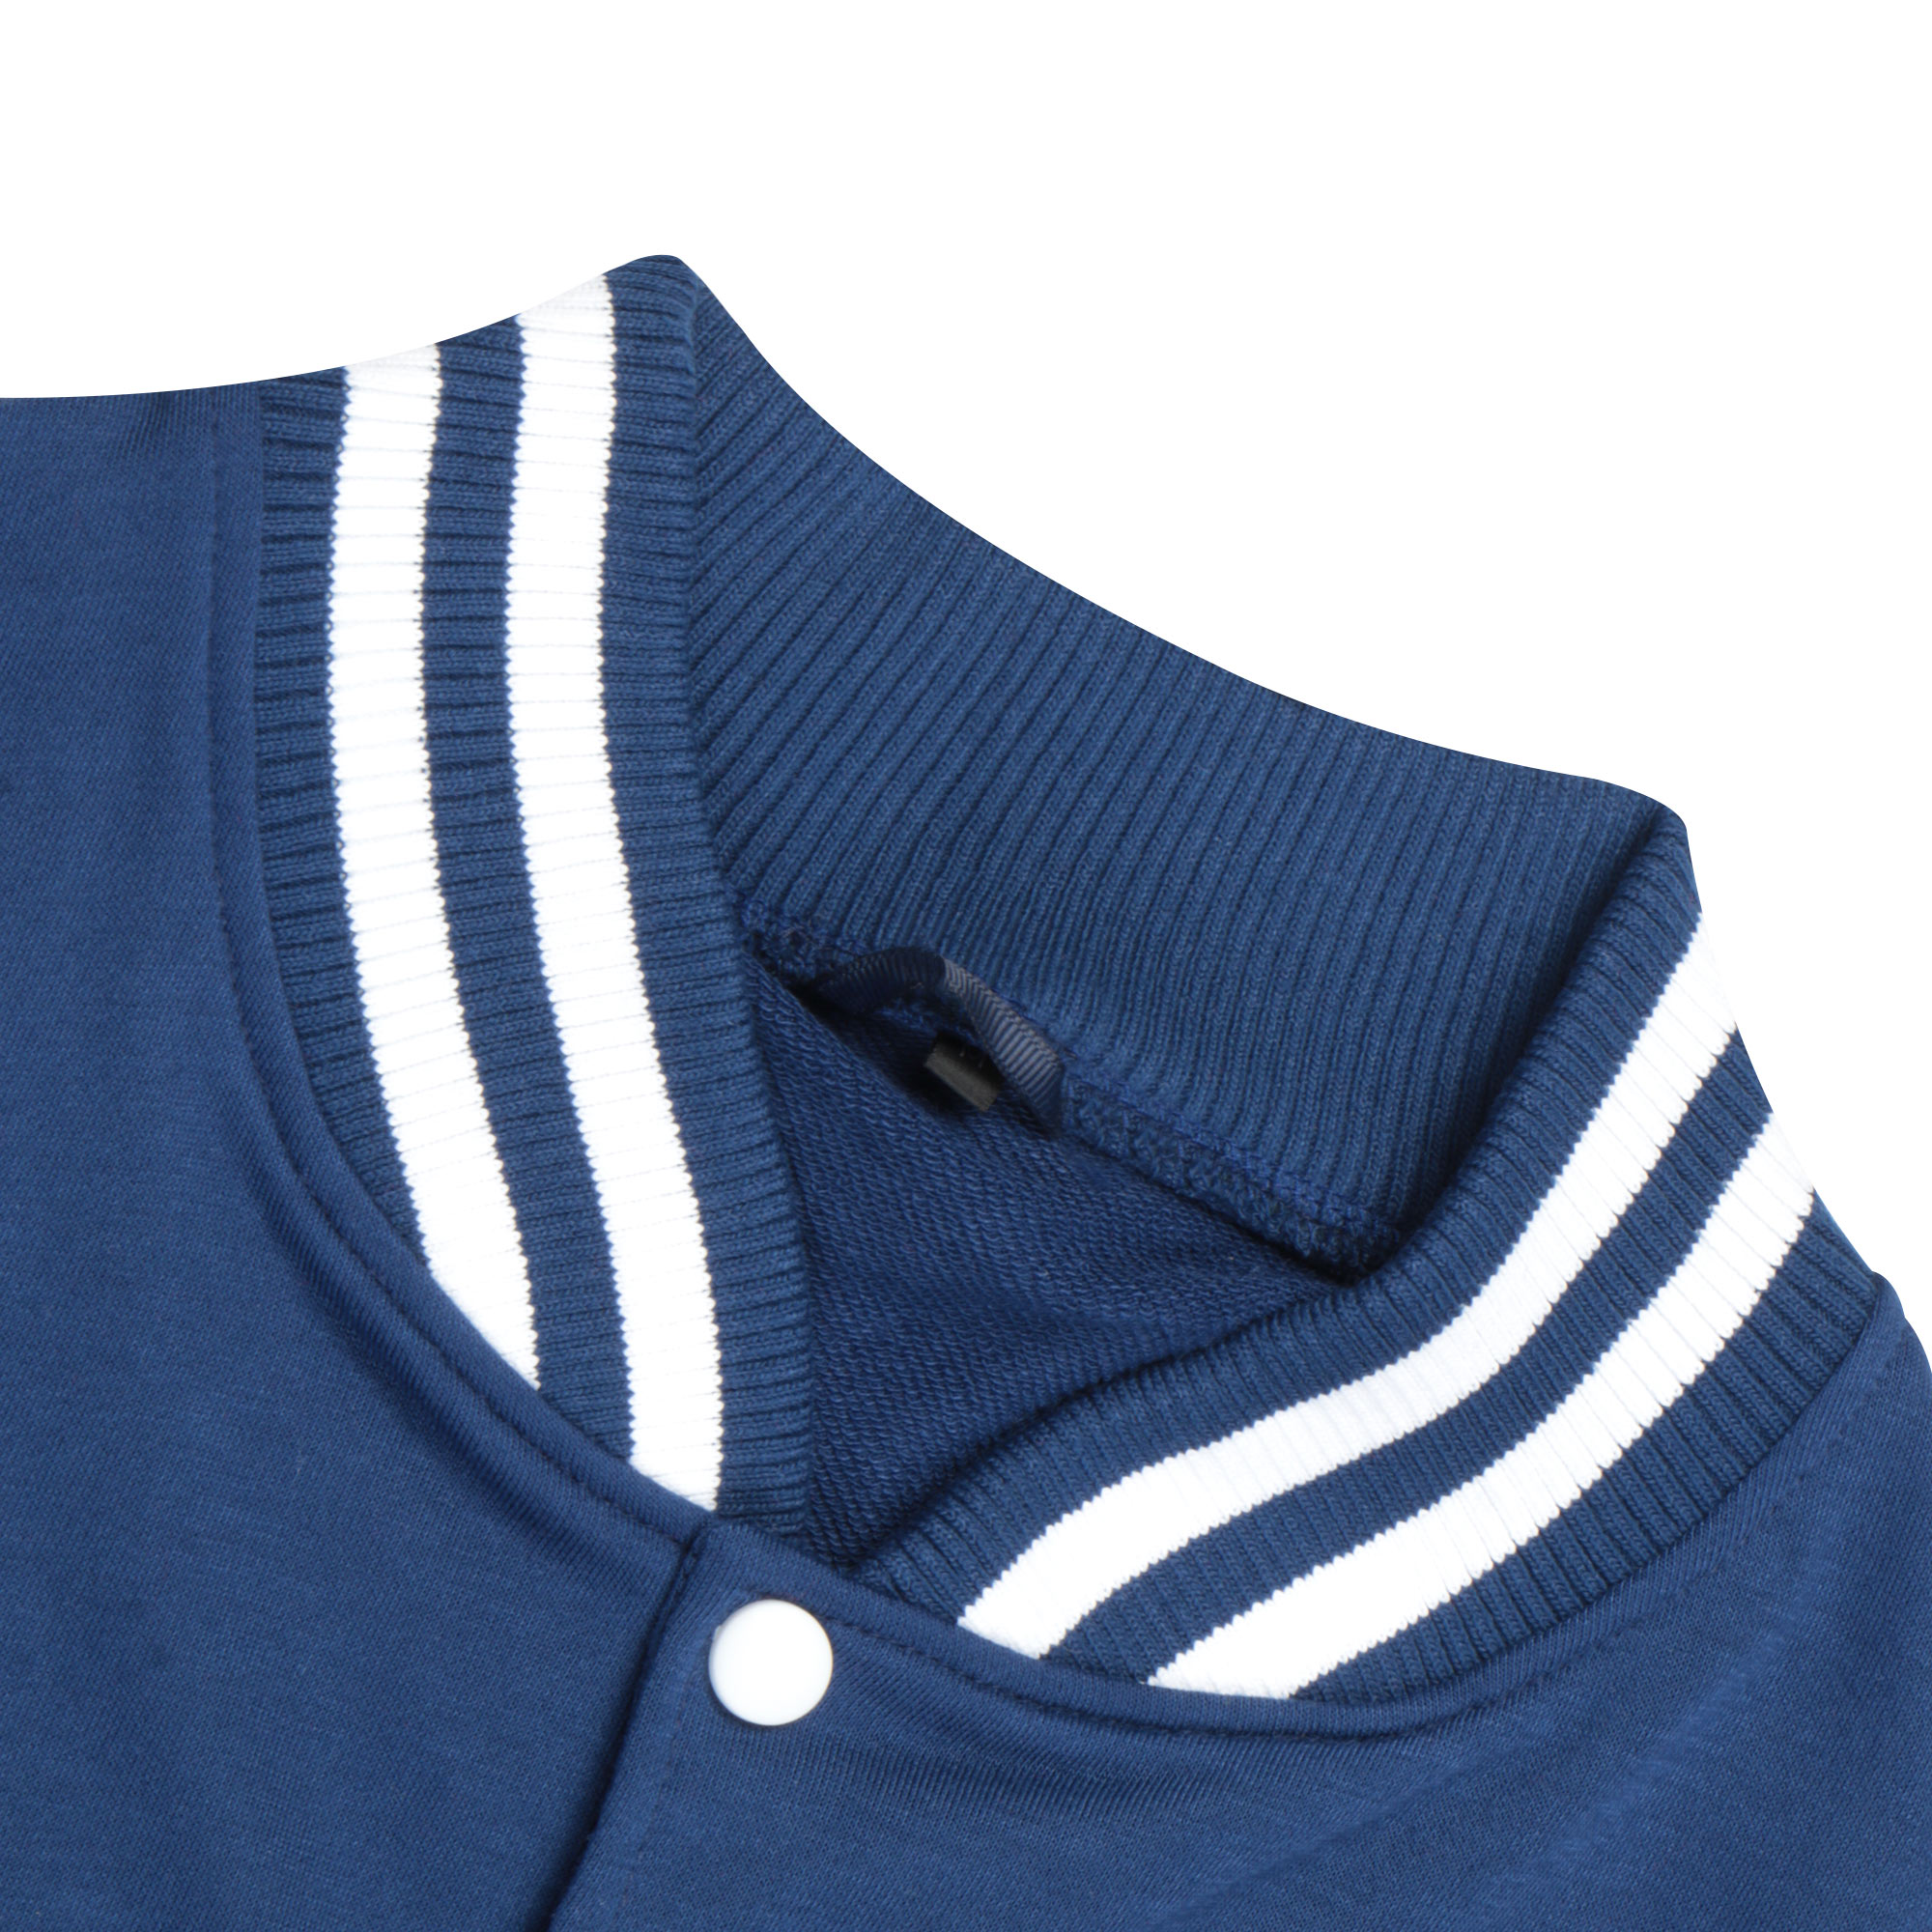 Бомбер Garment тёмно-синий/белый M полиэстер, цвет темно-синий, размер M - фото 2